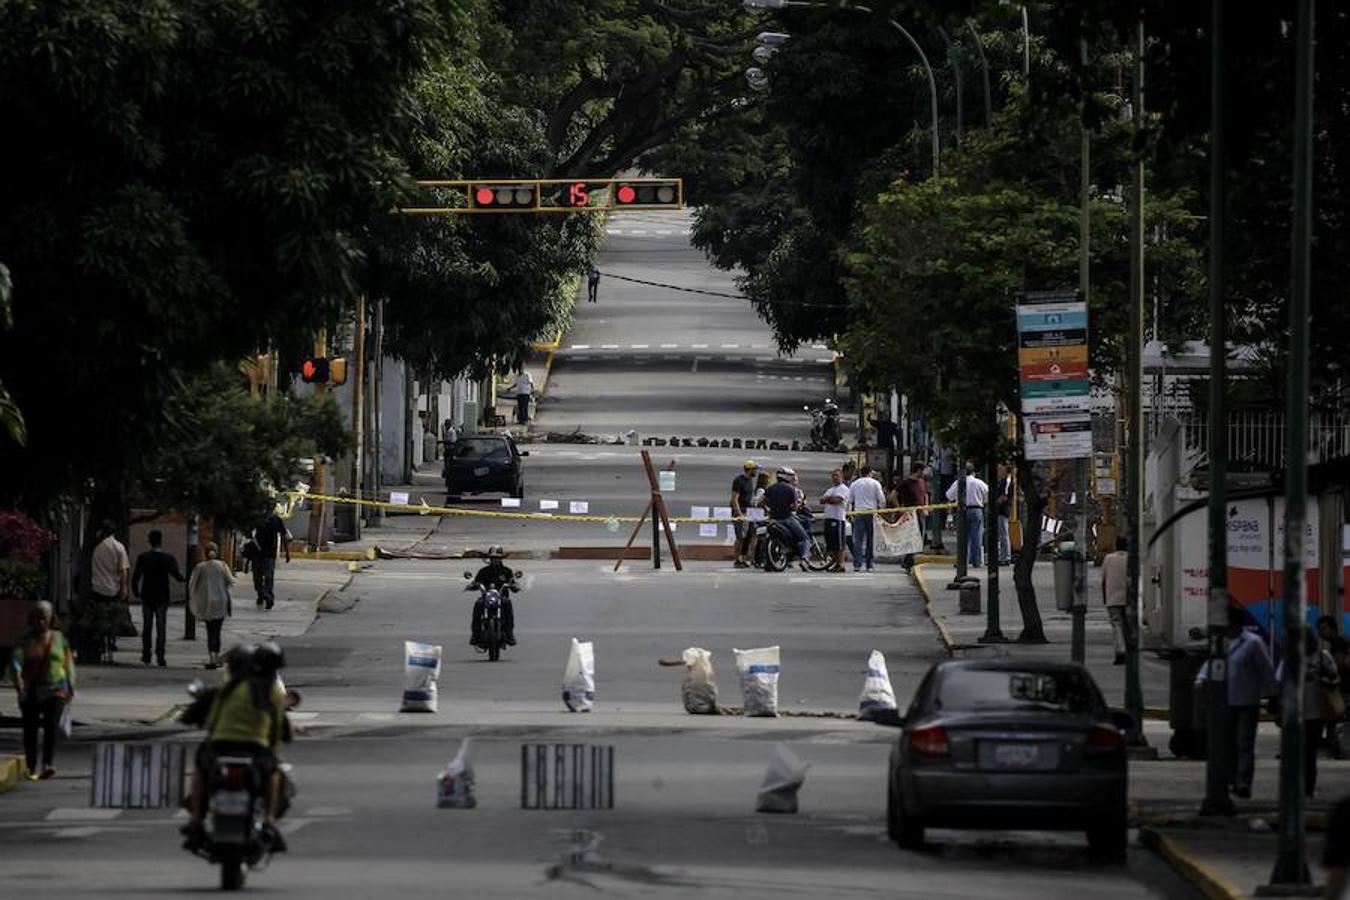 Las barricadas y bloqueos en las calles y autopistas impedían el tránsito principalmente en los municipios El Hatillo, Chacao y Sucre, gobernados por opositores, se mantienen desde aproximadamente las 07.00 del miércoles horas local. El tráfico quedó limitado a motoristas y transeúntes